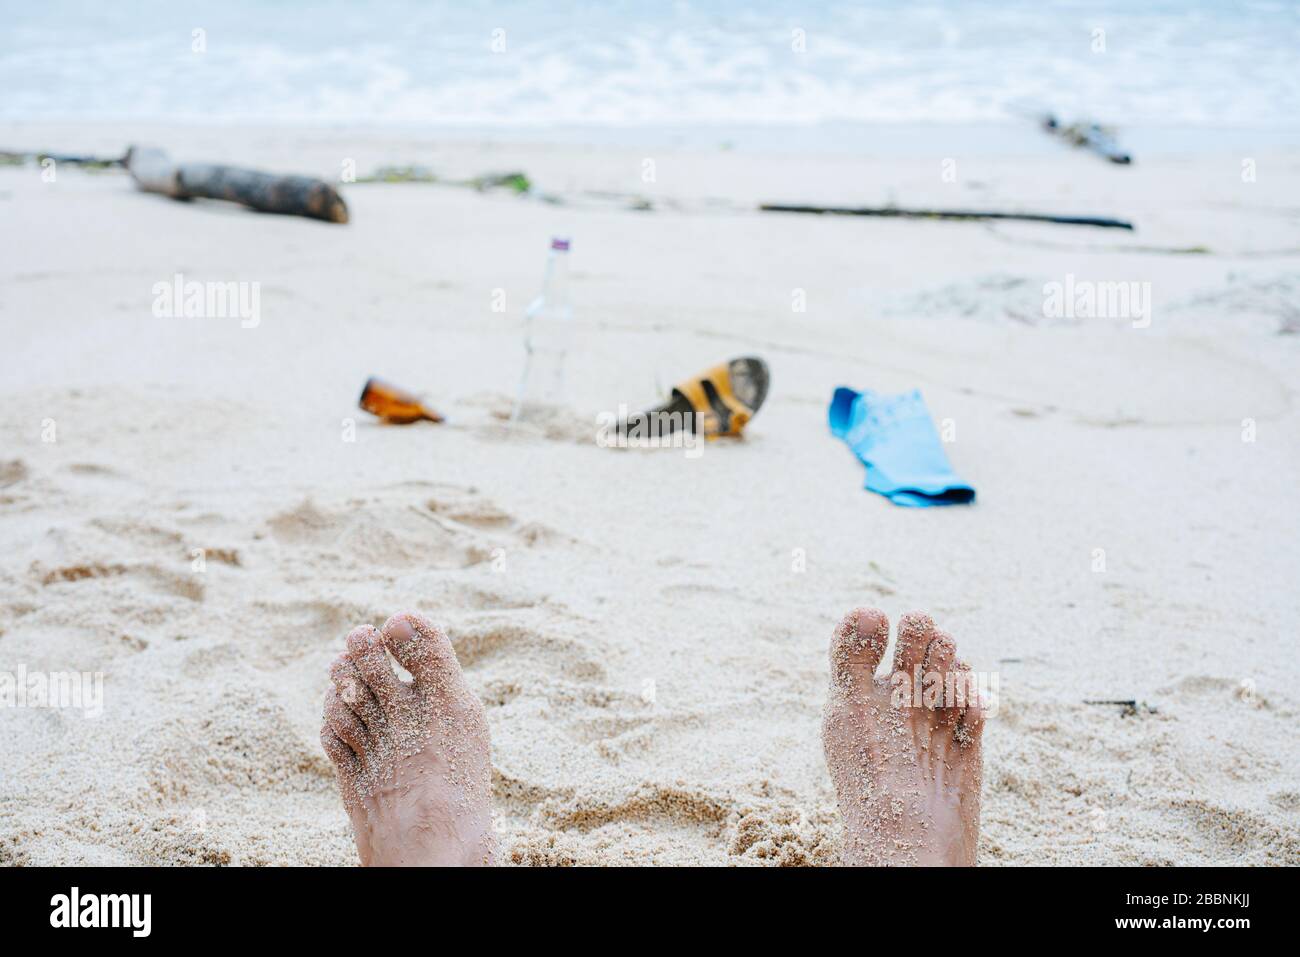 Sichtbild der Füße und des Mülls der Person auf Strandsand eines Ozeanufers Stockfoto